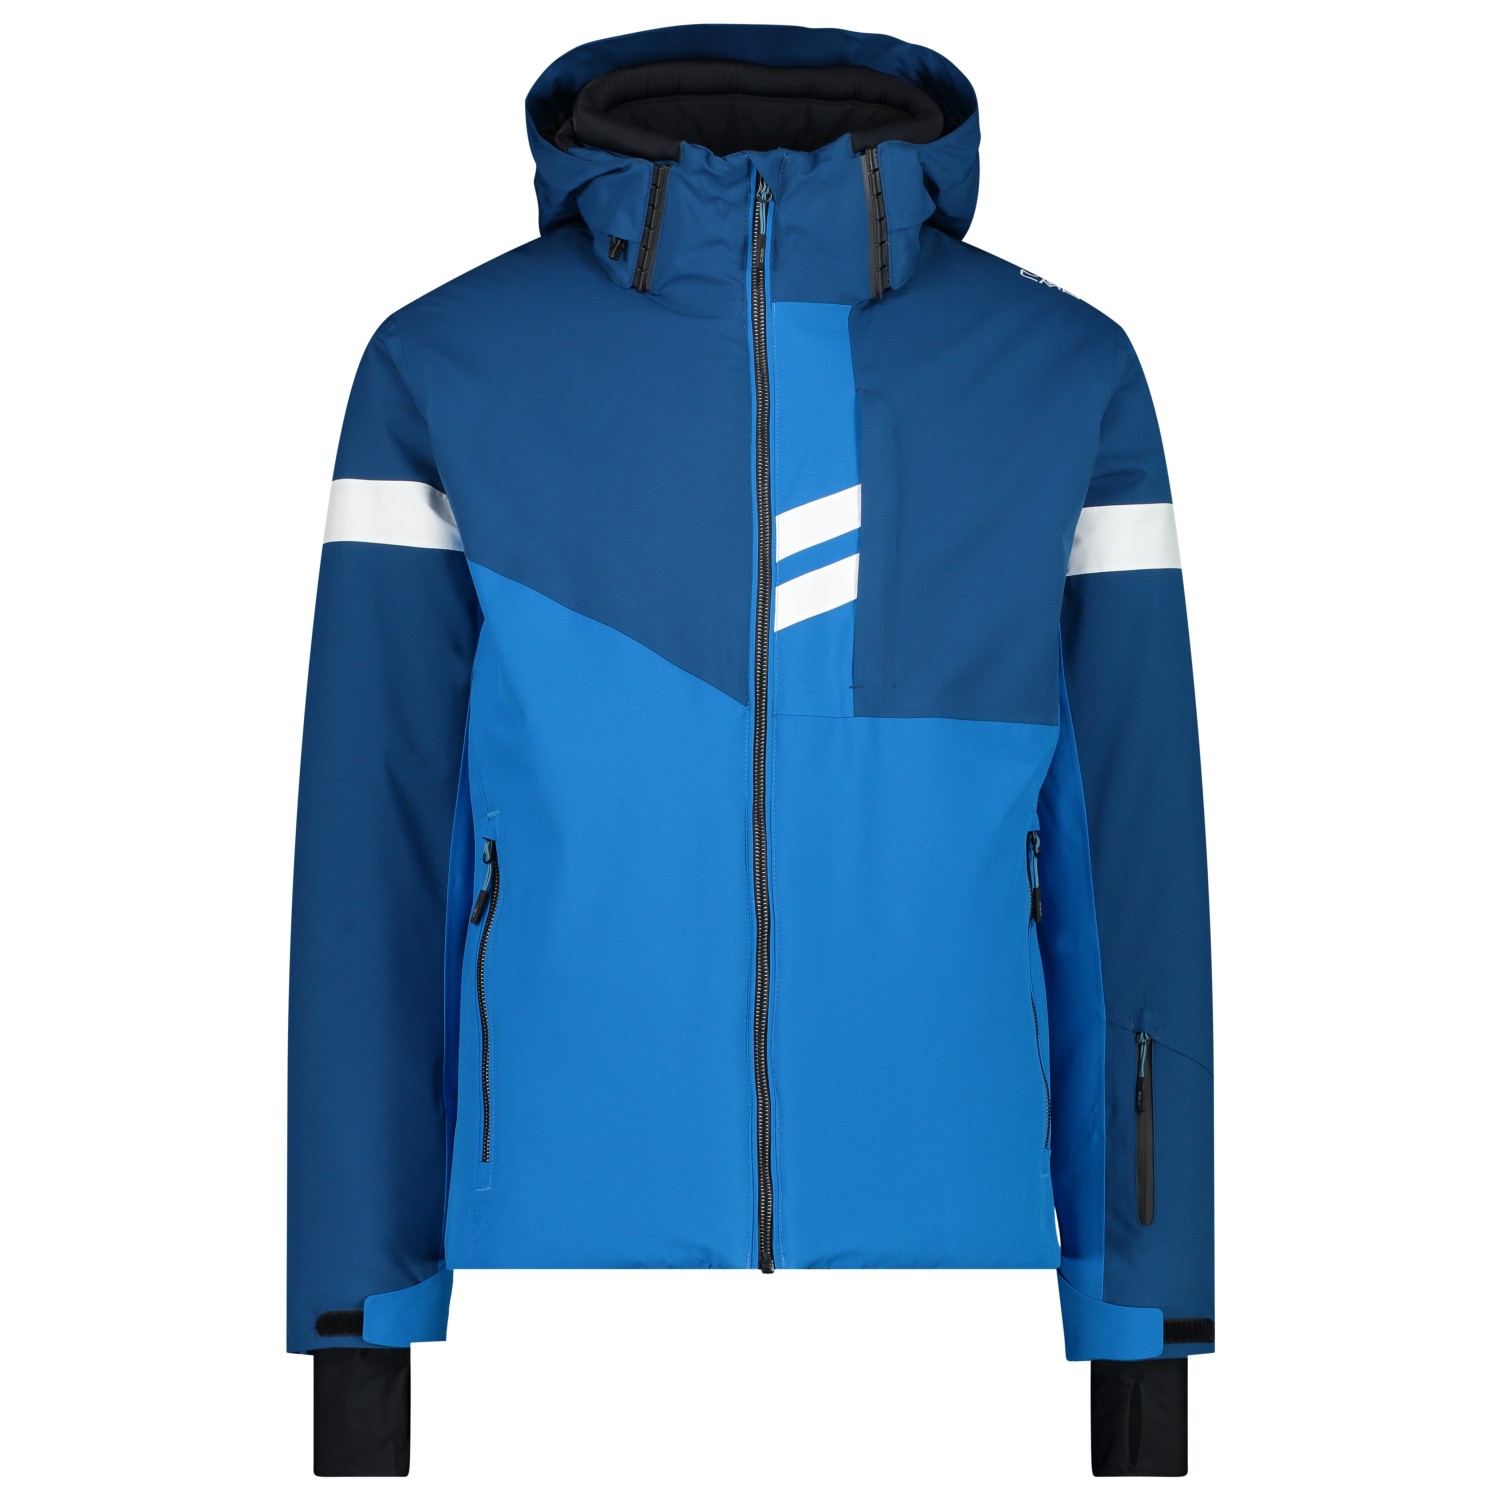 Лыжная куртка Cmp Jacket Zip Hood Twill, цвет River двойная куртка cmp jacket zip hood detachable inner taslan цвет nero